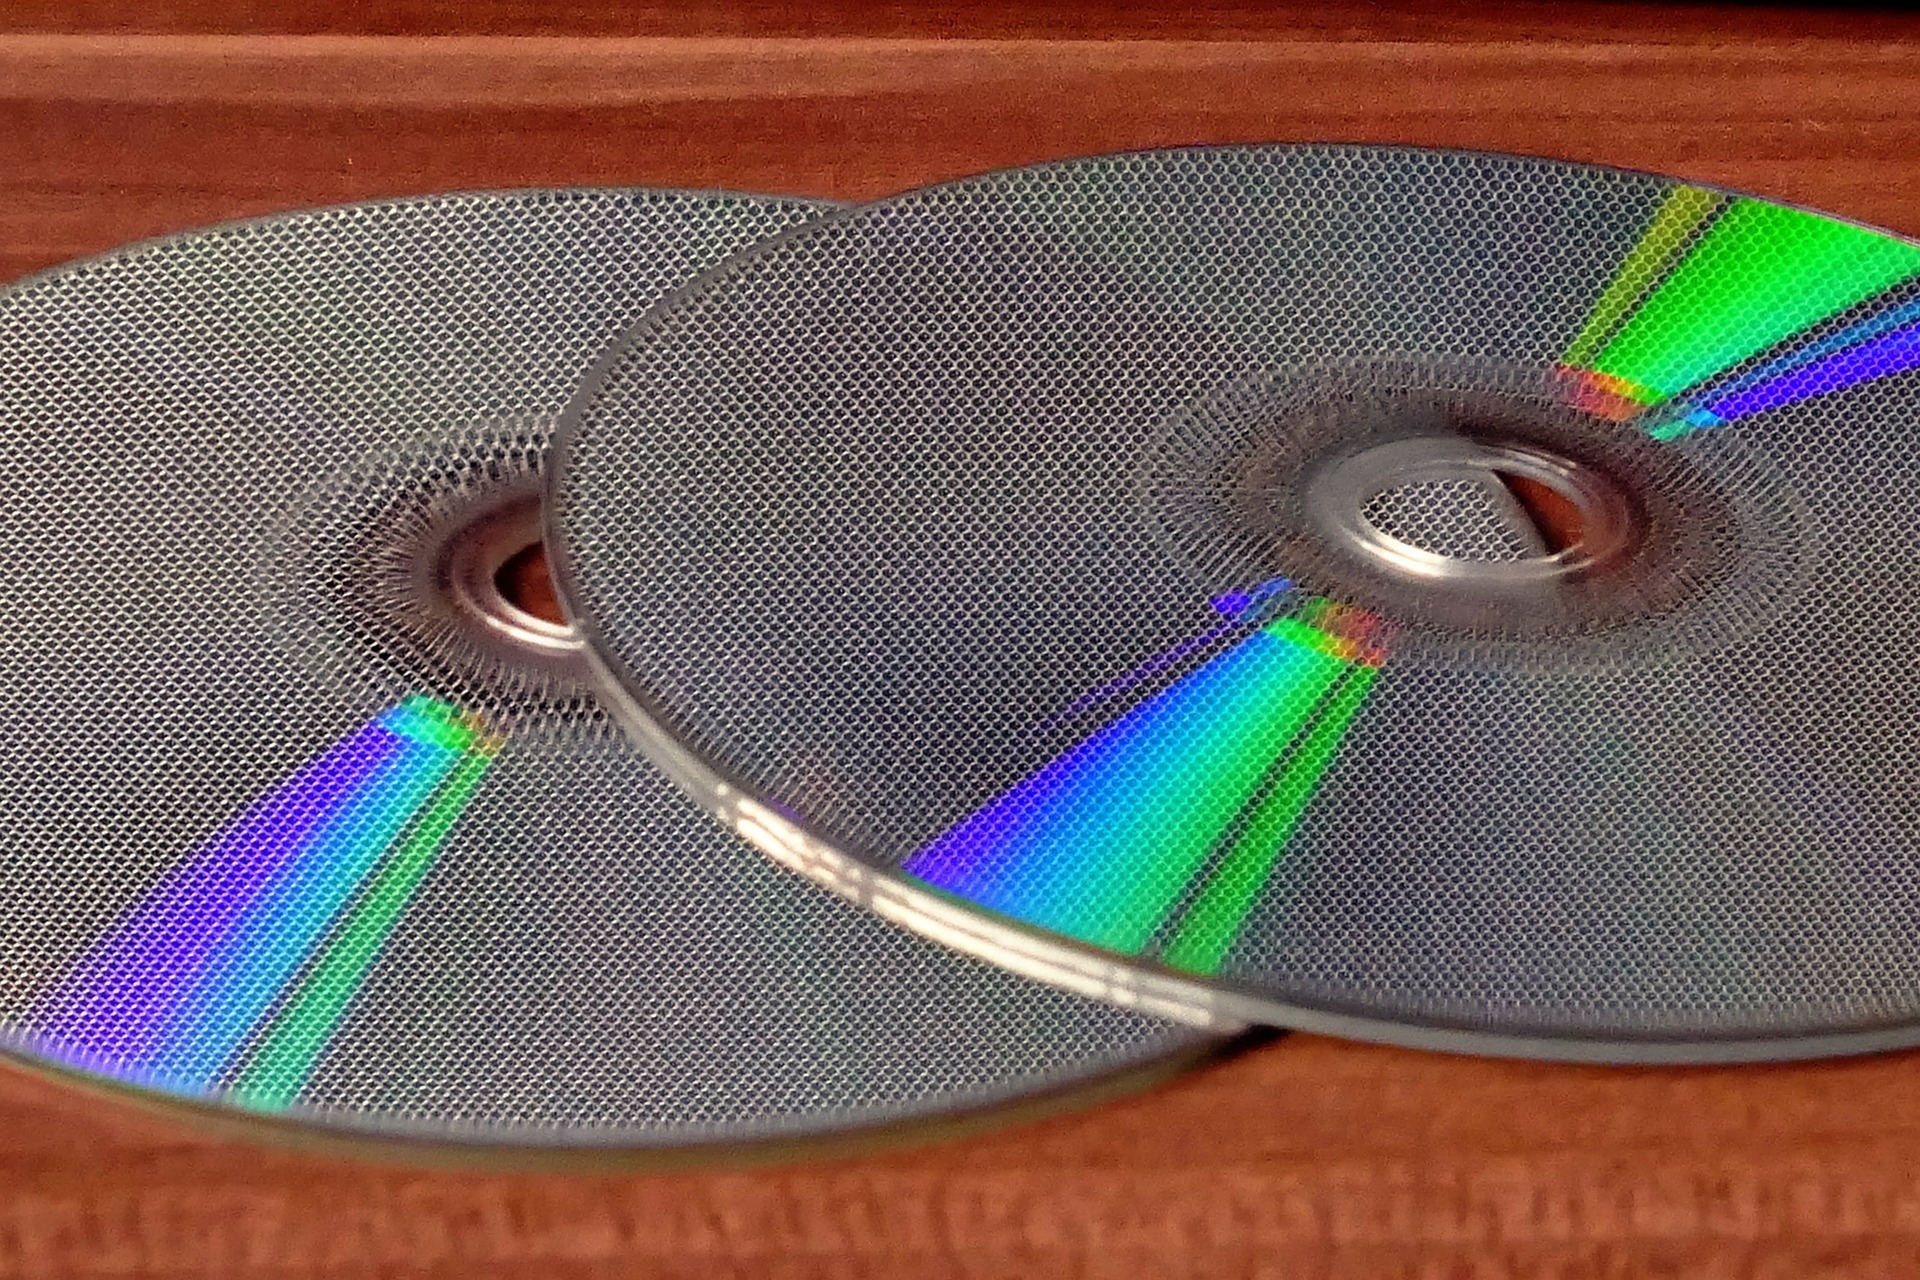 Imagen de CD-R para ilustrar post sobre copia de seguridad del certificado digital